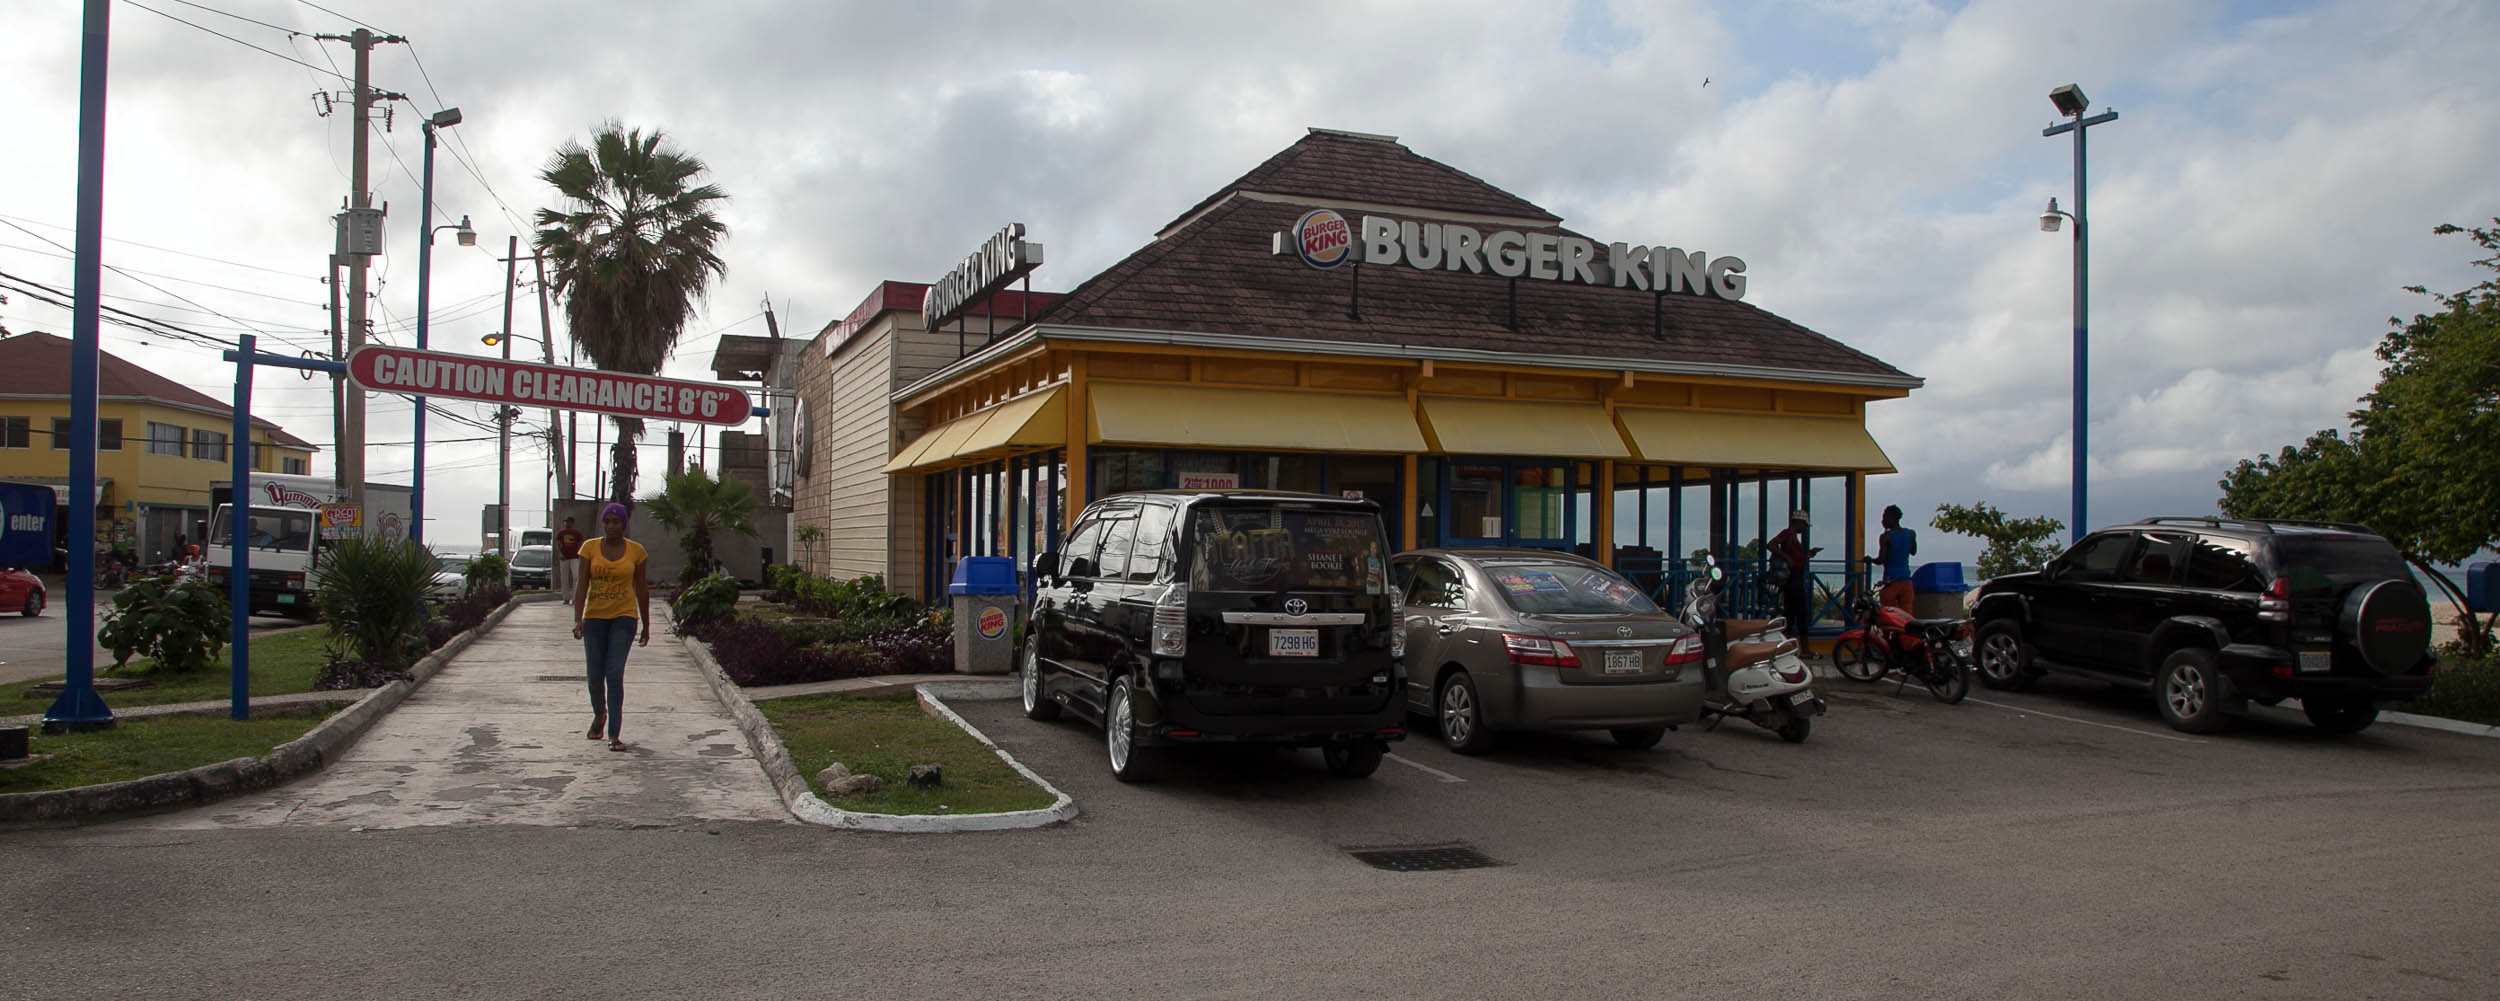 Burger King, Negril Jamaica